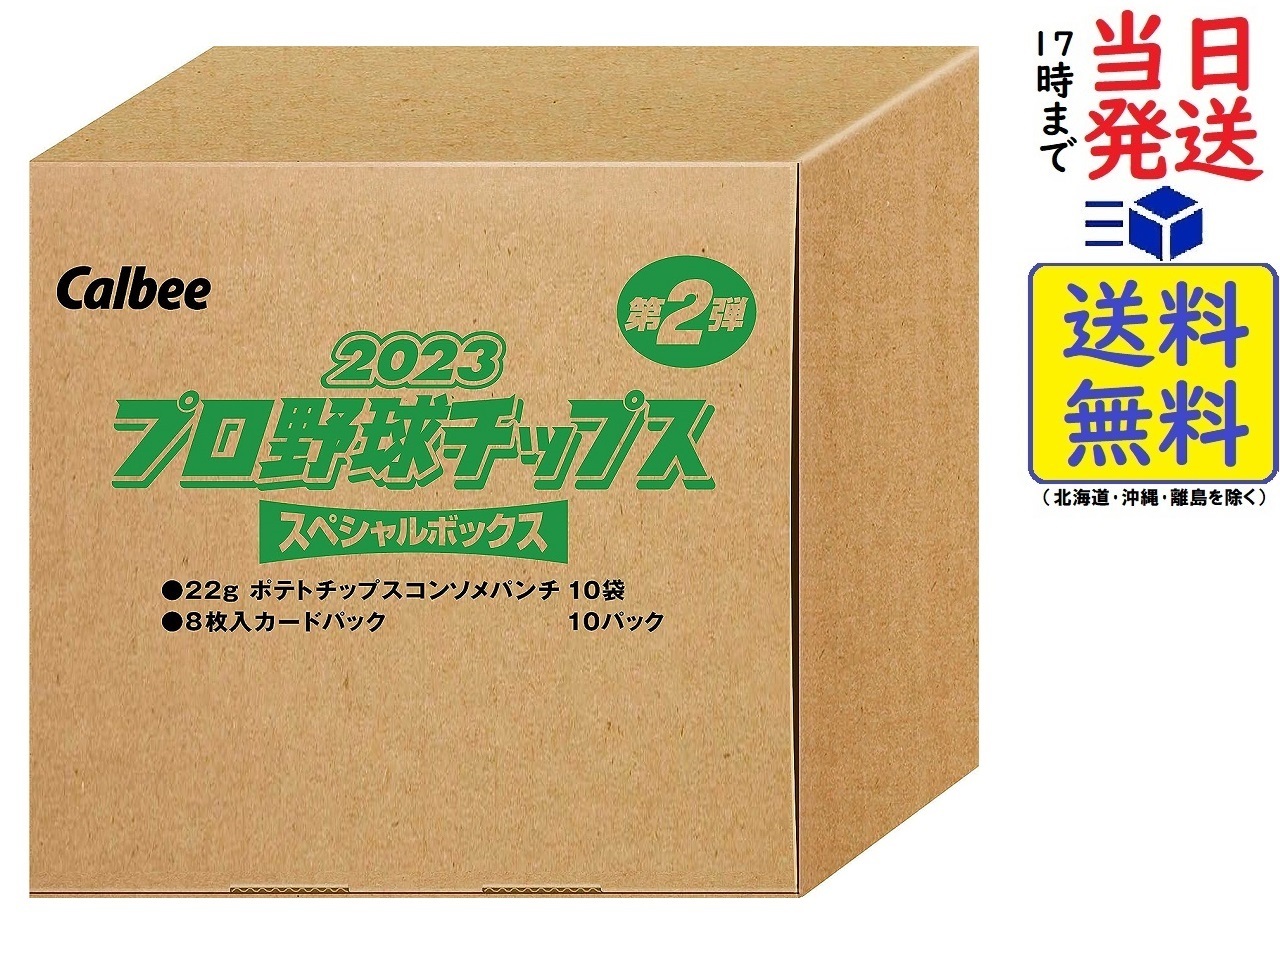 【楽天市場】カルビー プロ野球チップス スペシャルボックス 第2弾